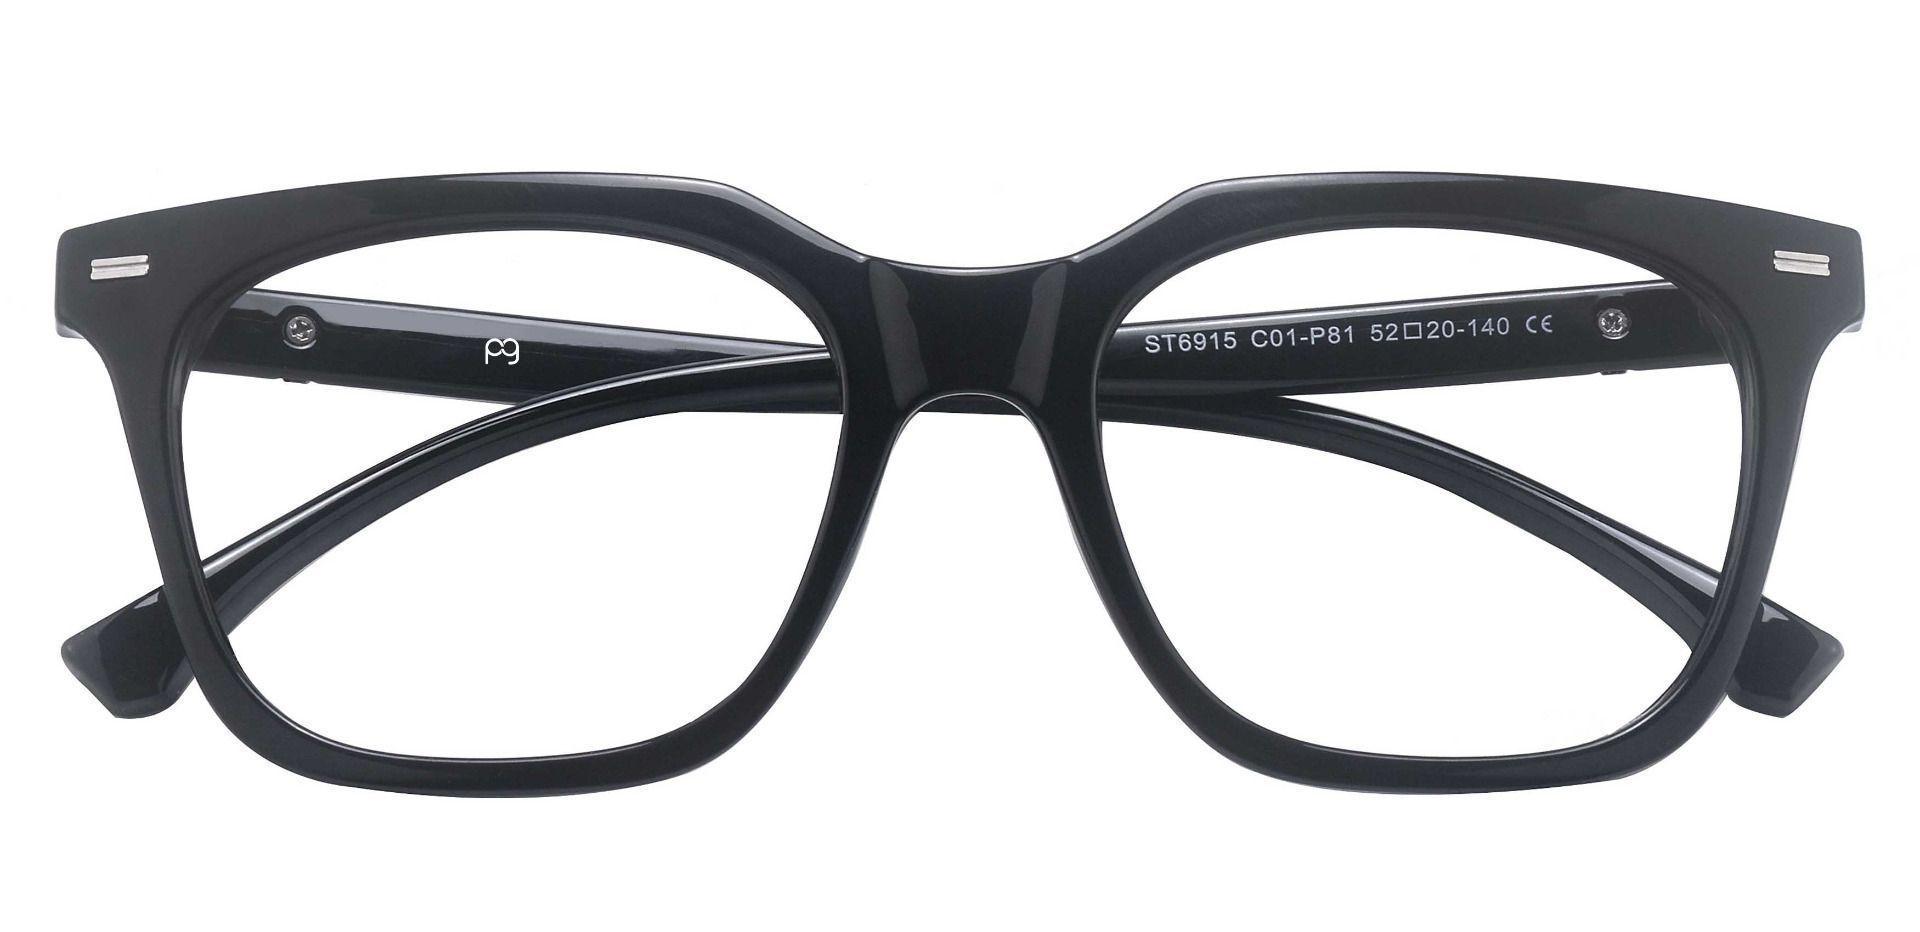 Klein Square Prescription Glasses - Black